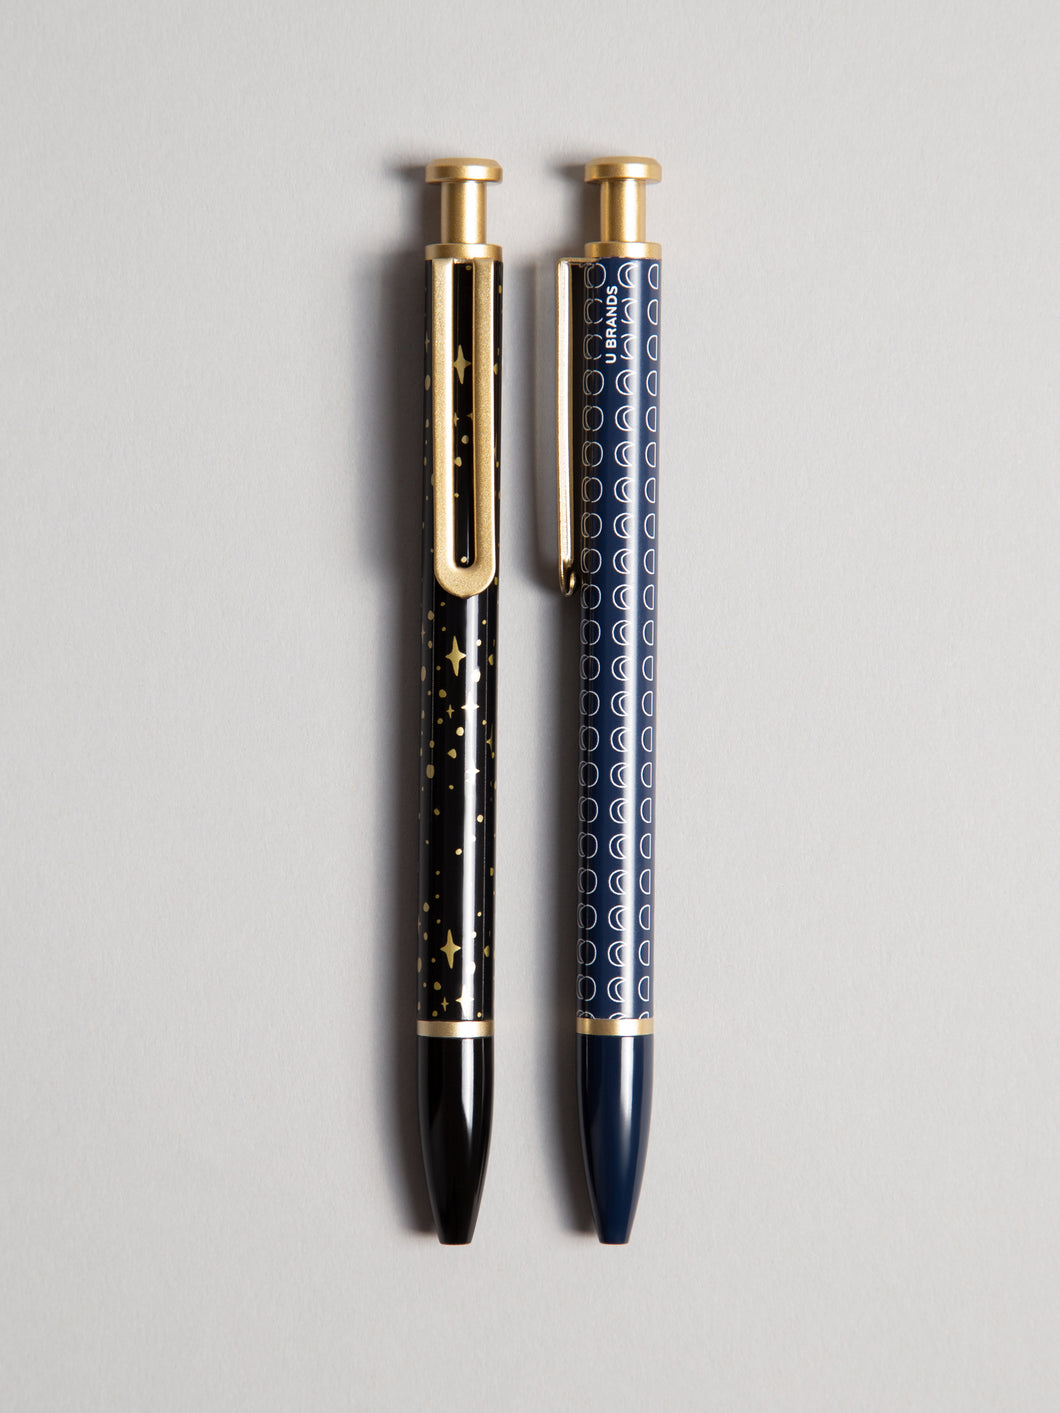 Celestial Monterey Ballpoint Pens, Set of 2